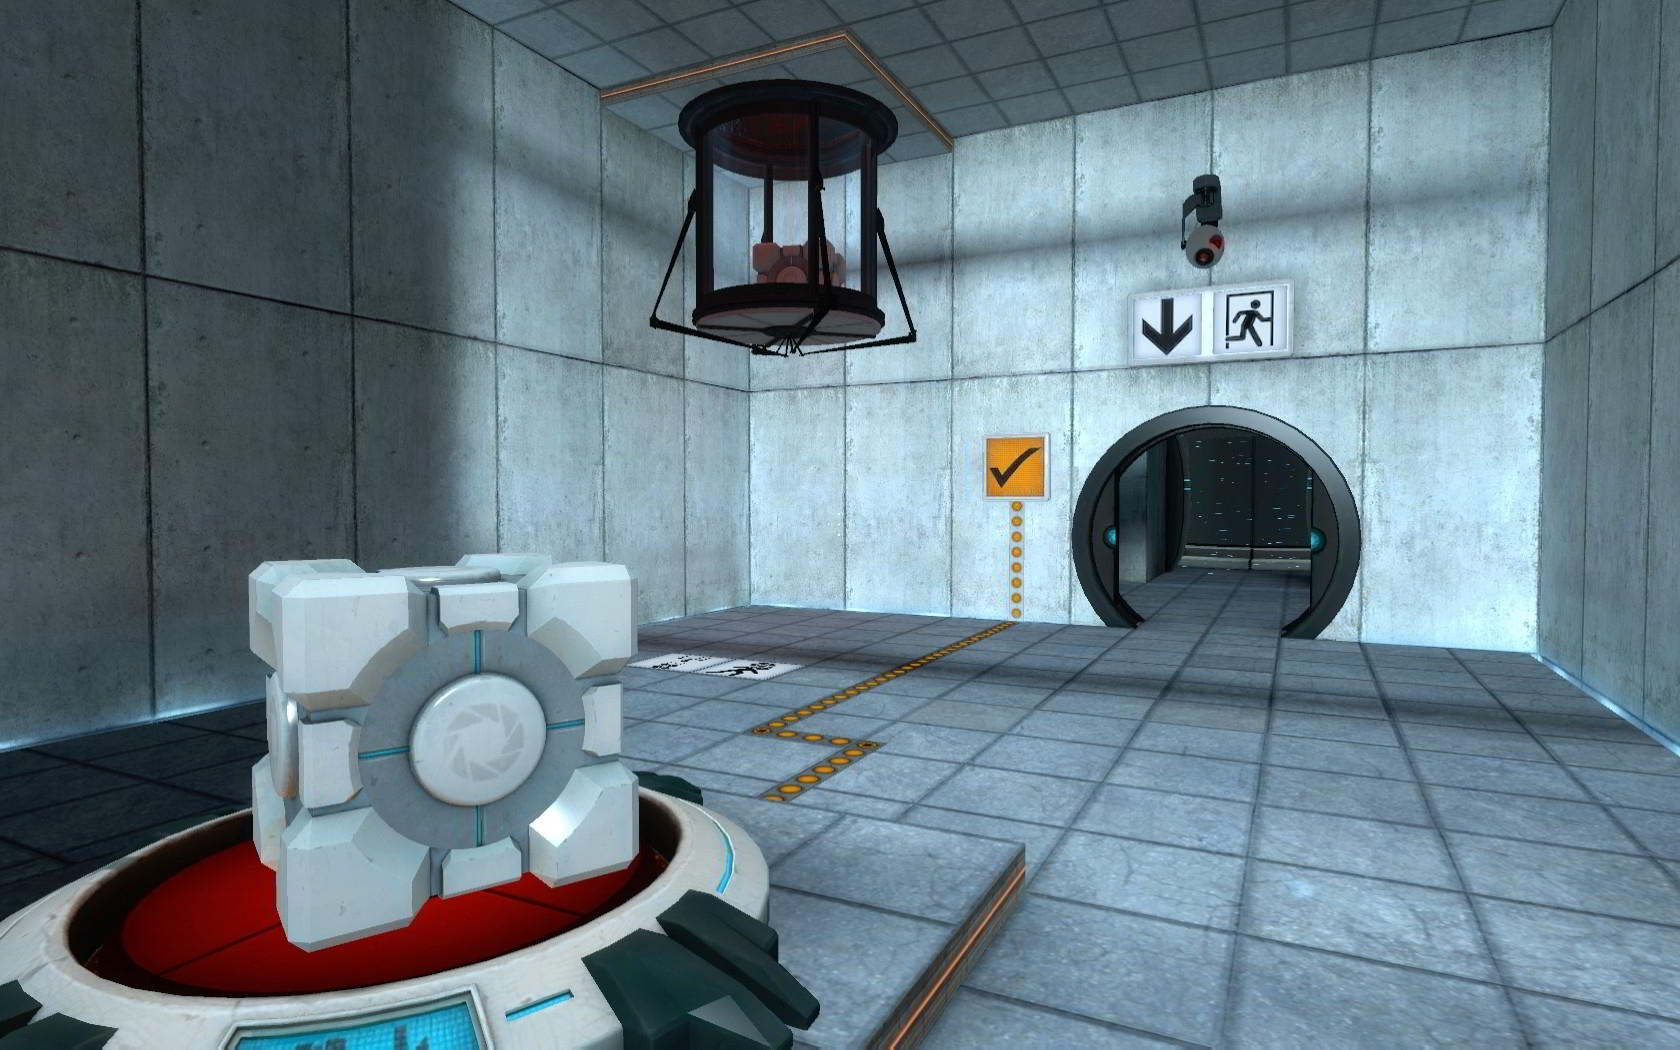 1 22 портал. Portal 2 испытательная камера. Portal 2 комната. Портал 1. Портал локации.